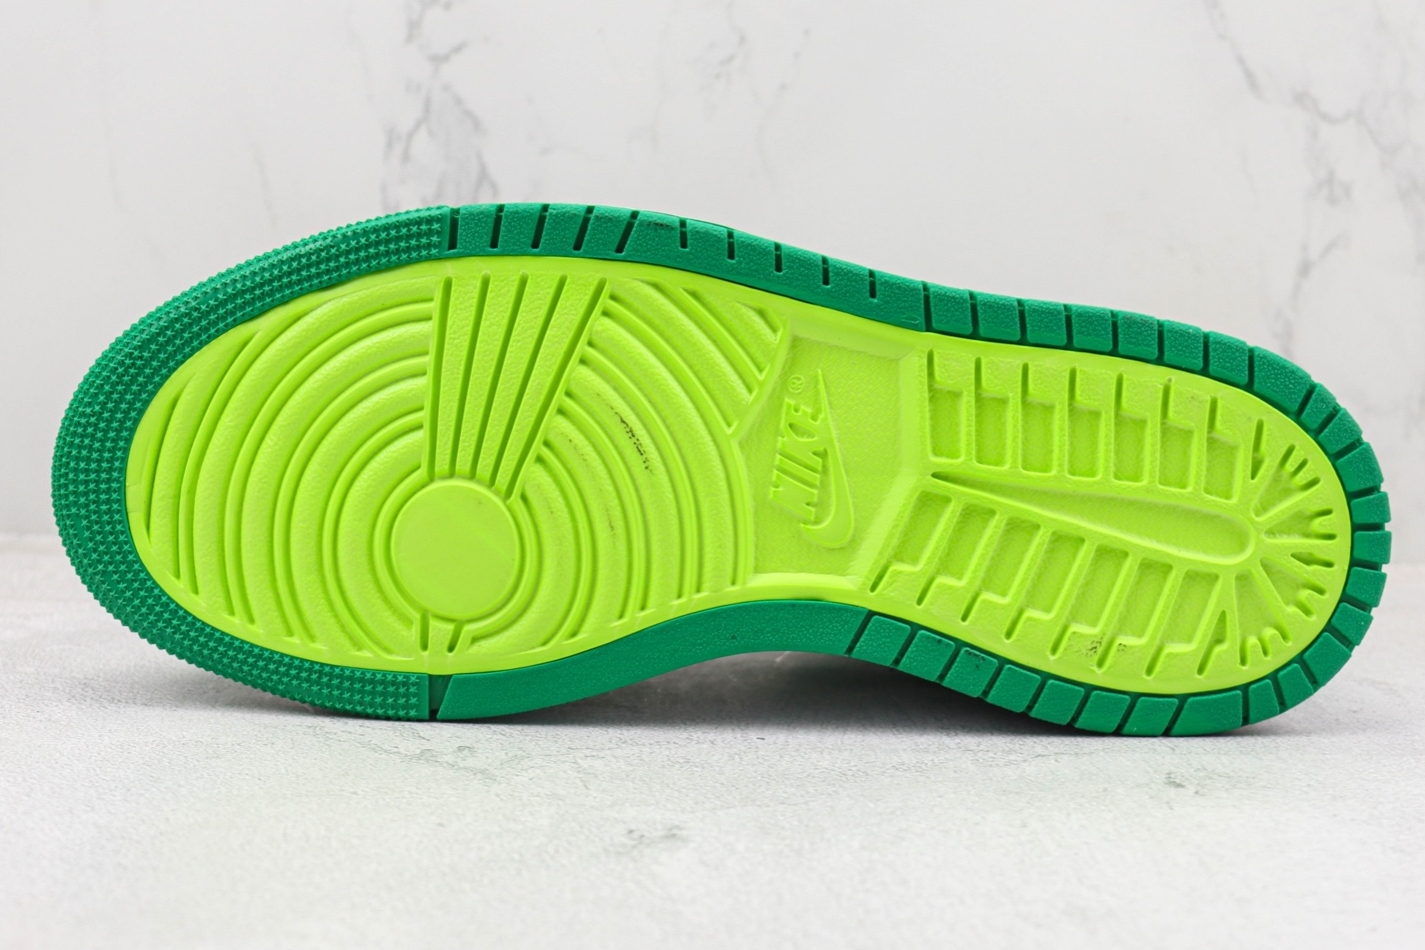 Air Jordan 1 Zoom Comfort 'Stadium Green' CT0978-300 - Premium Sneaker for Ultimate Style and Comfort